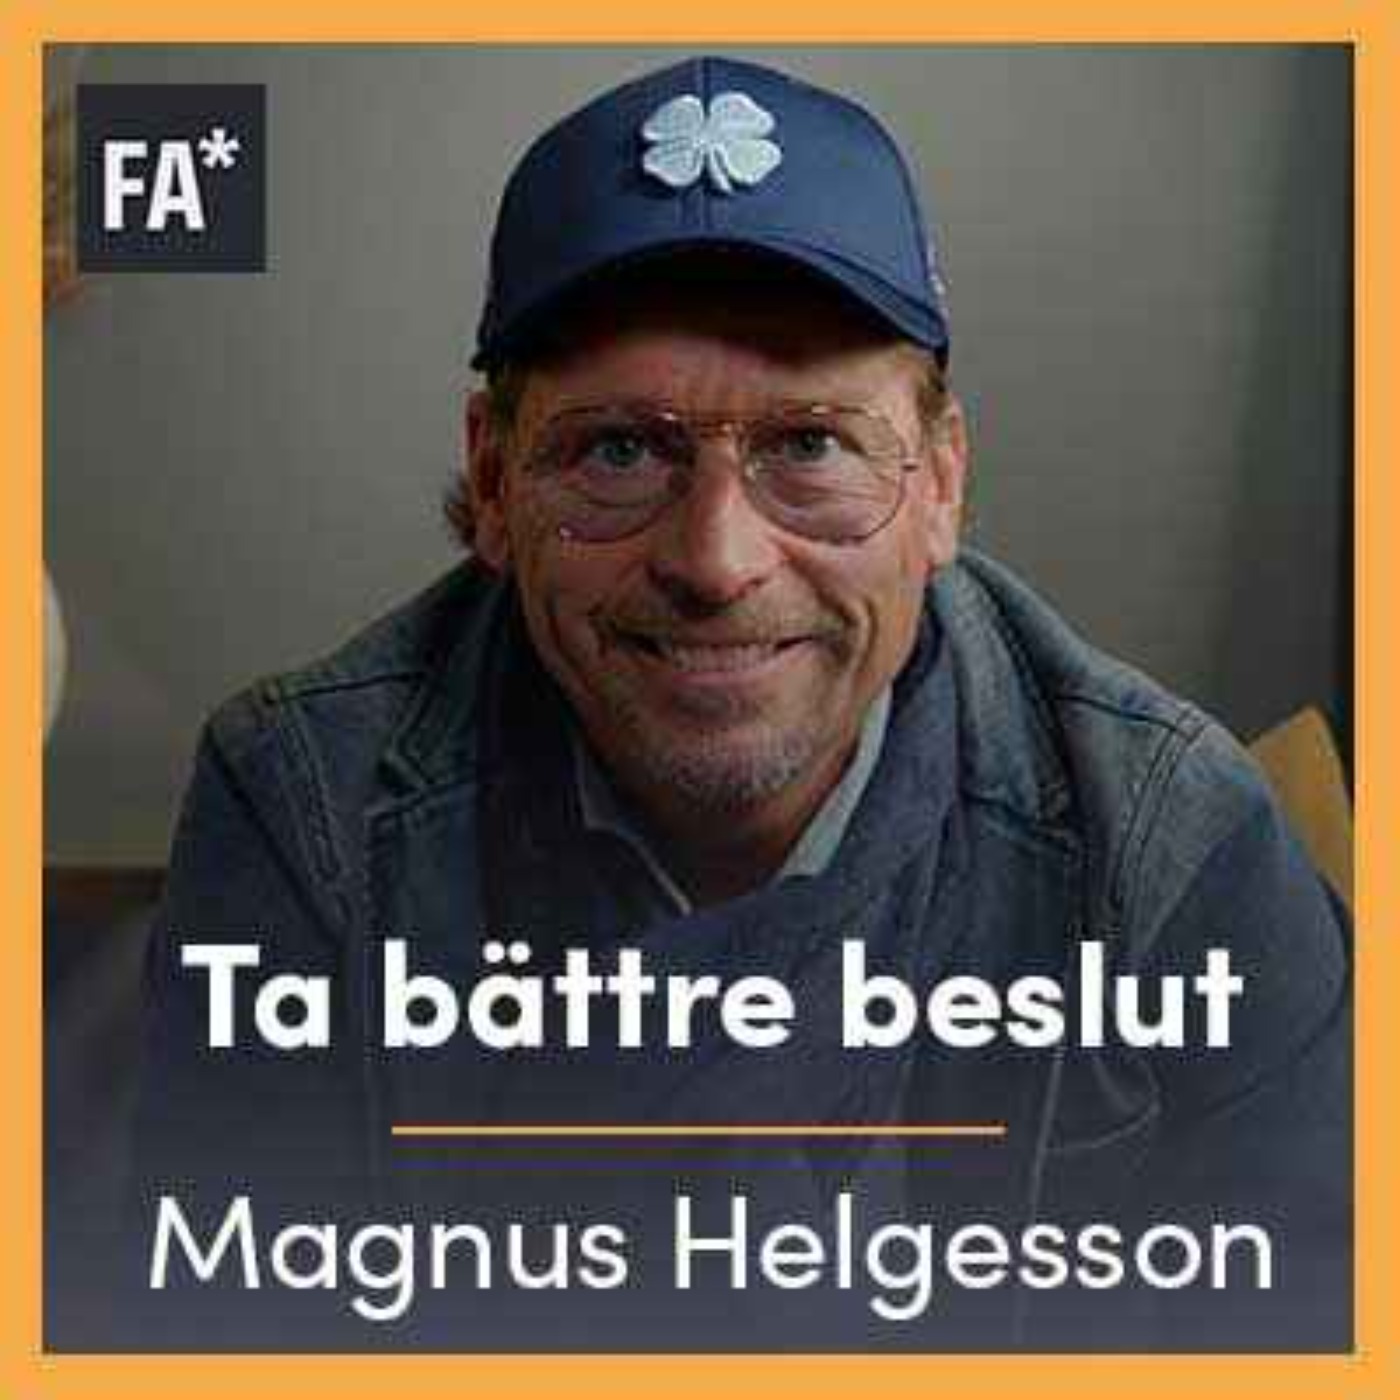 Vässa ditt rationella tänkande - Magnus Helgesson